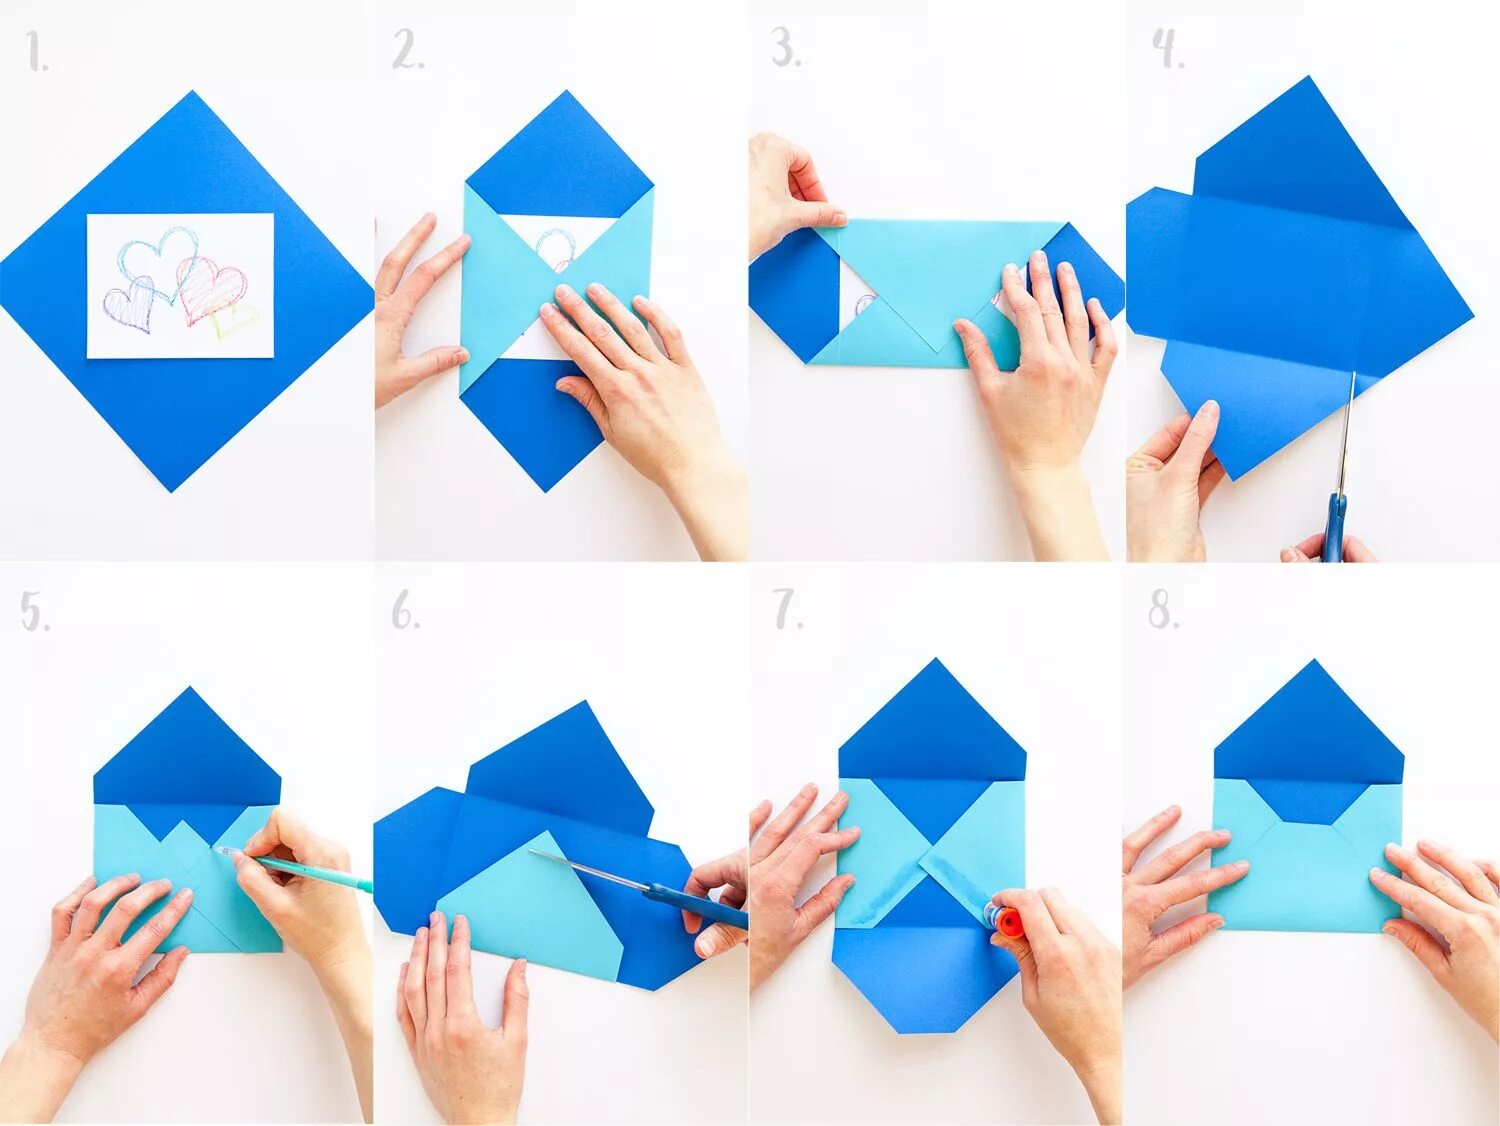 Письмо конверт из бумаги а4. Как сложить конверт из а4. Как сложить конверт из листа а4. Как делать конверт из бумаги а4 своими руками без клея. Как сложить конверт из бумаги а4 без клея.